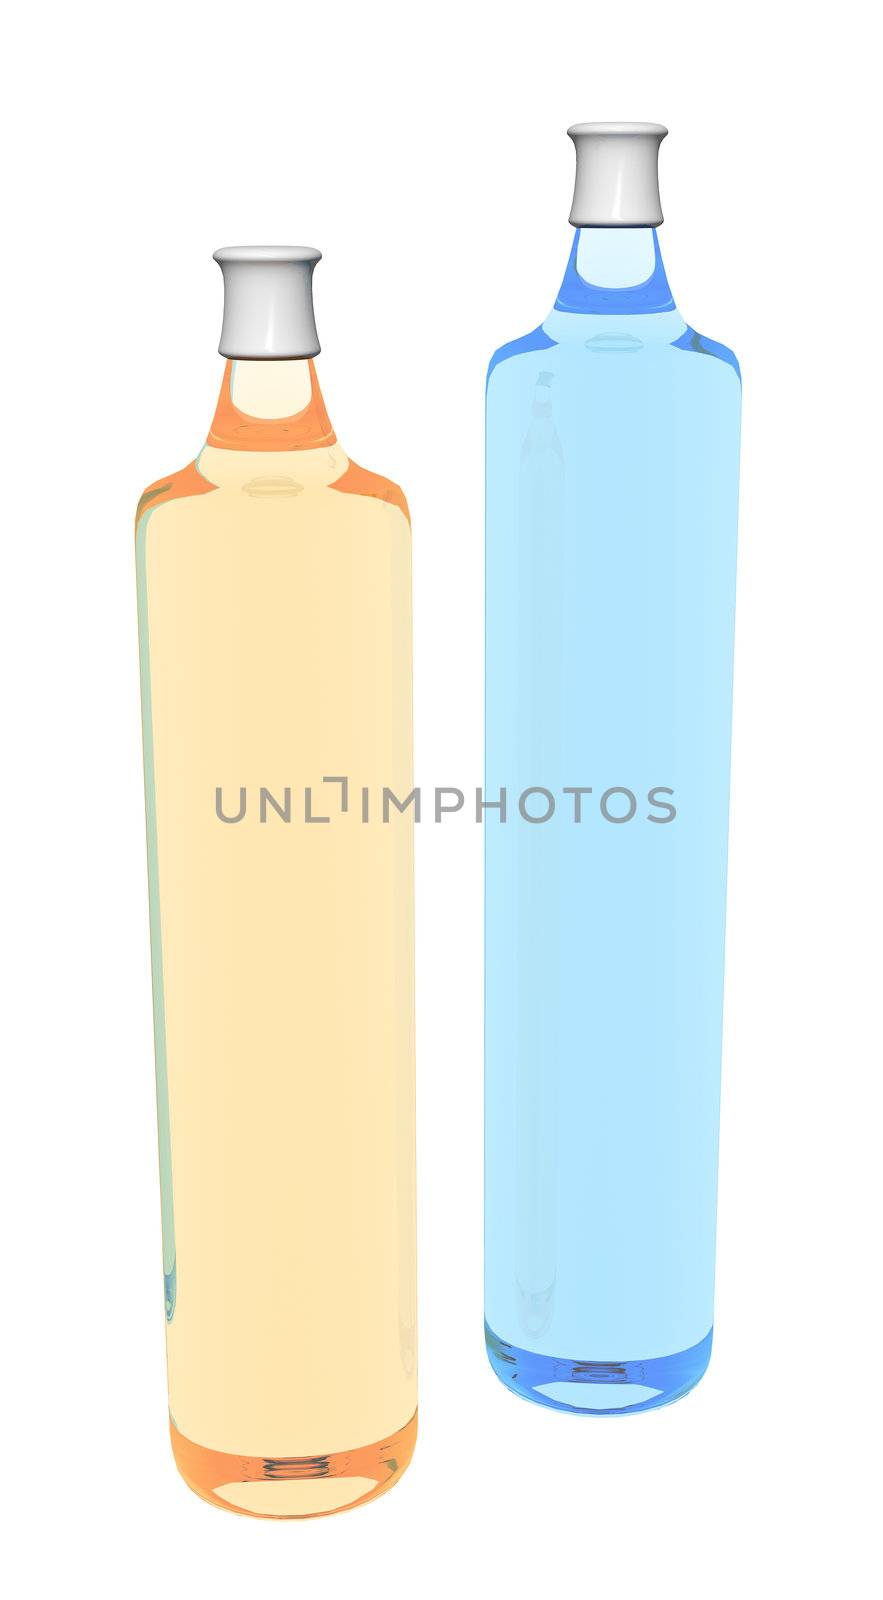 Shampoo bottles, 3D illustration by Morphart